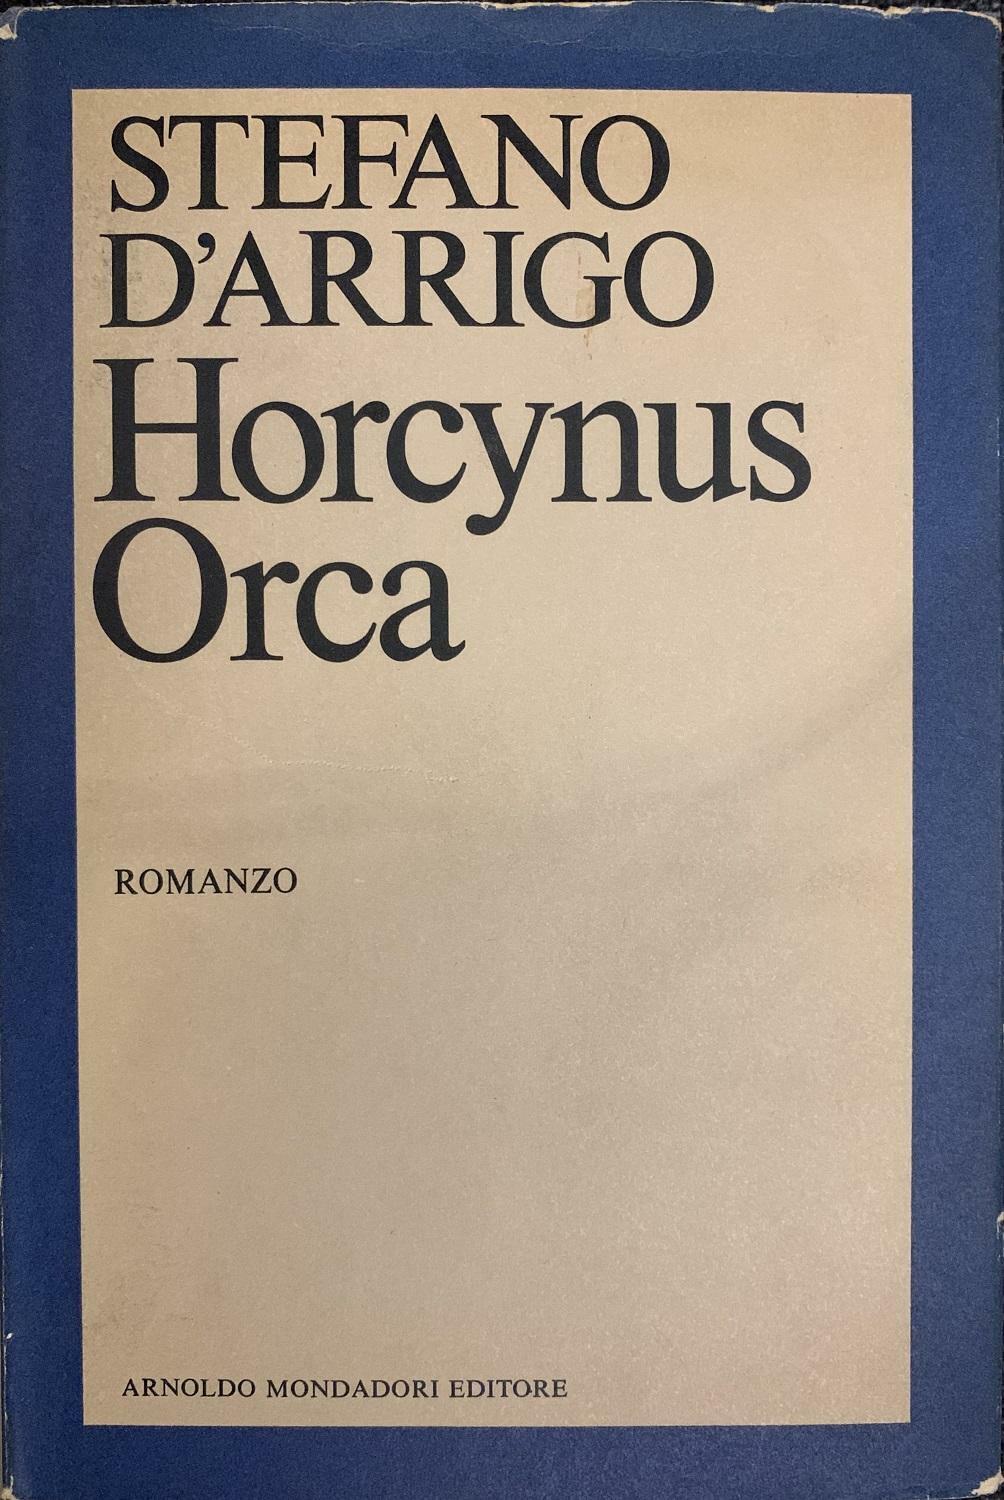 Stefano D’Arrigo, Horcynus Orca, 1975. Copertina